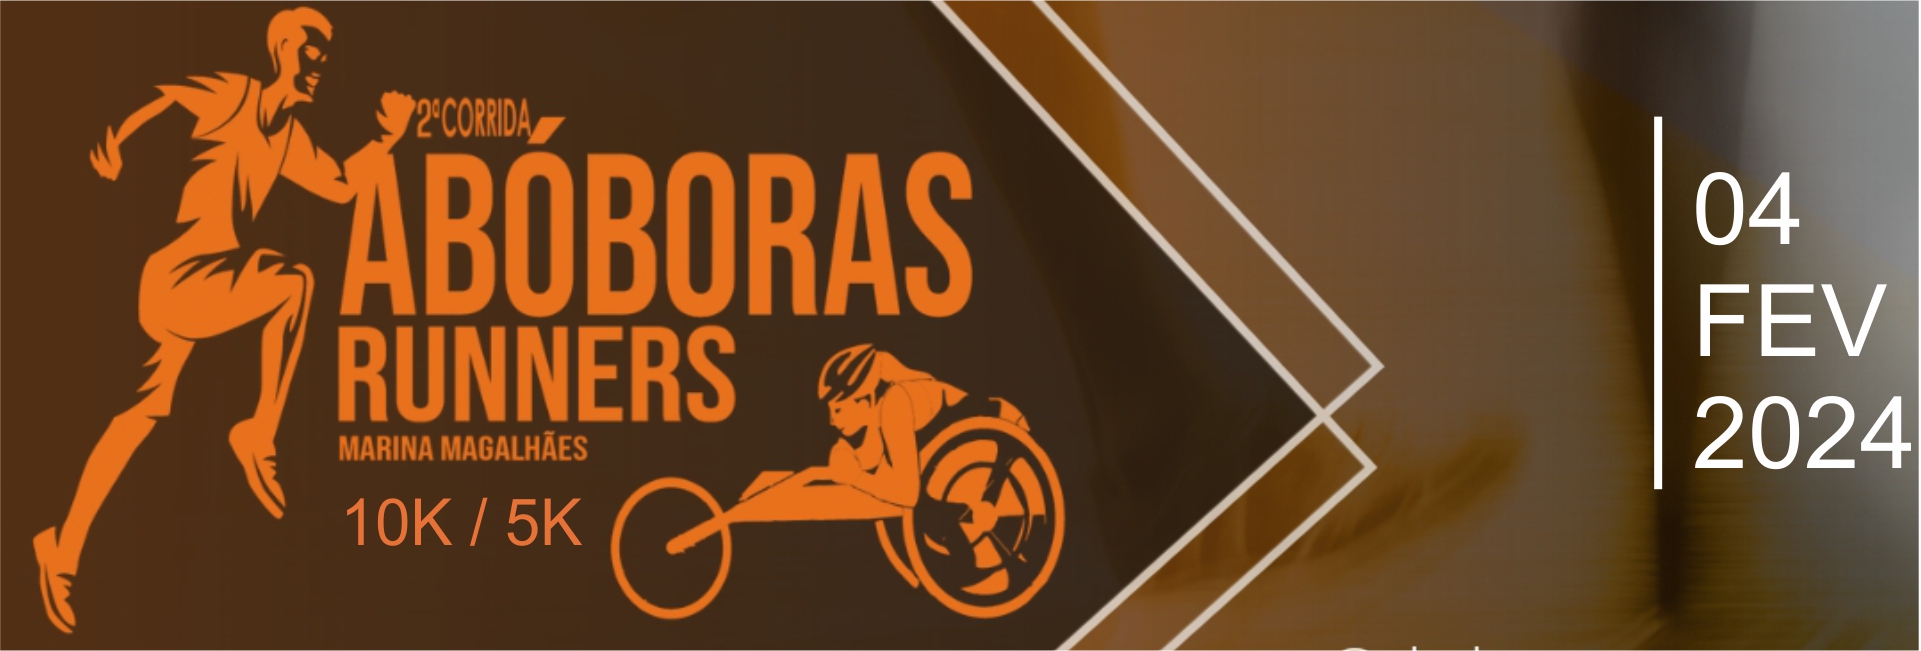 aboboras-runners-2024-banner